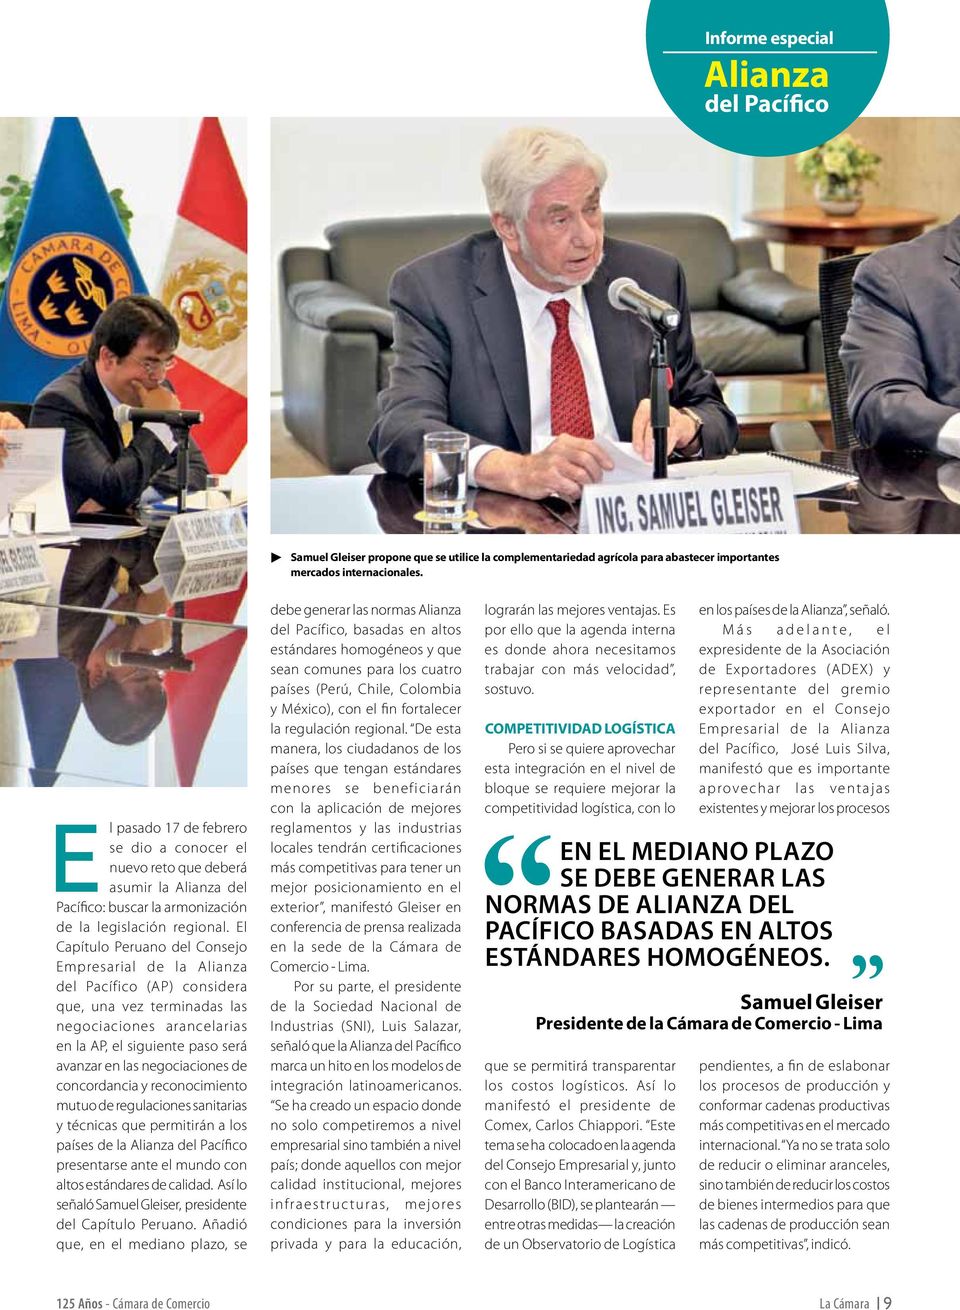 El Capítulo Peruano del Consejo Empresarial de la Alianza del Pacífico (AP) considera que, una vez terminadas las negociaciones arancelarias en la AP, el siguiente paso será avanzar en las